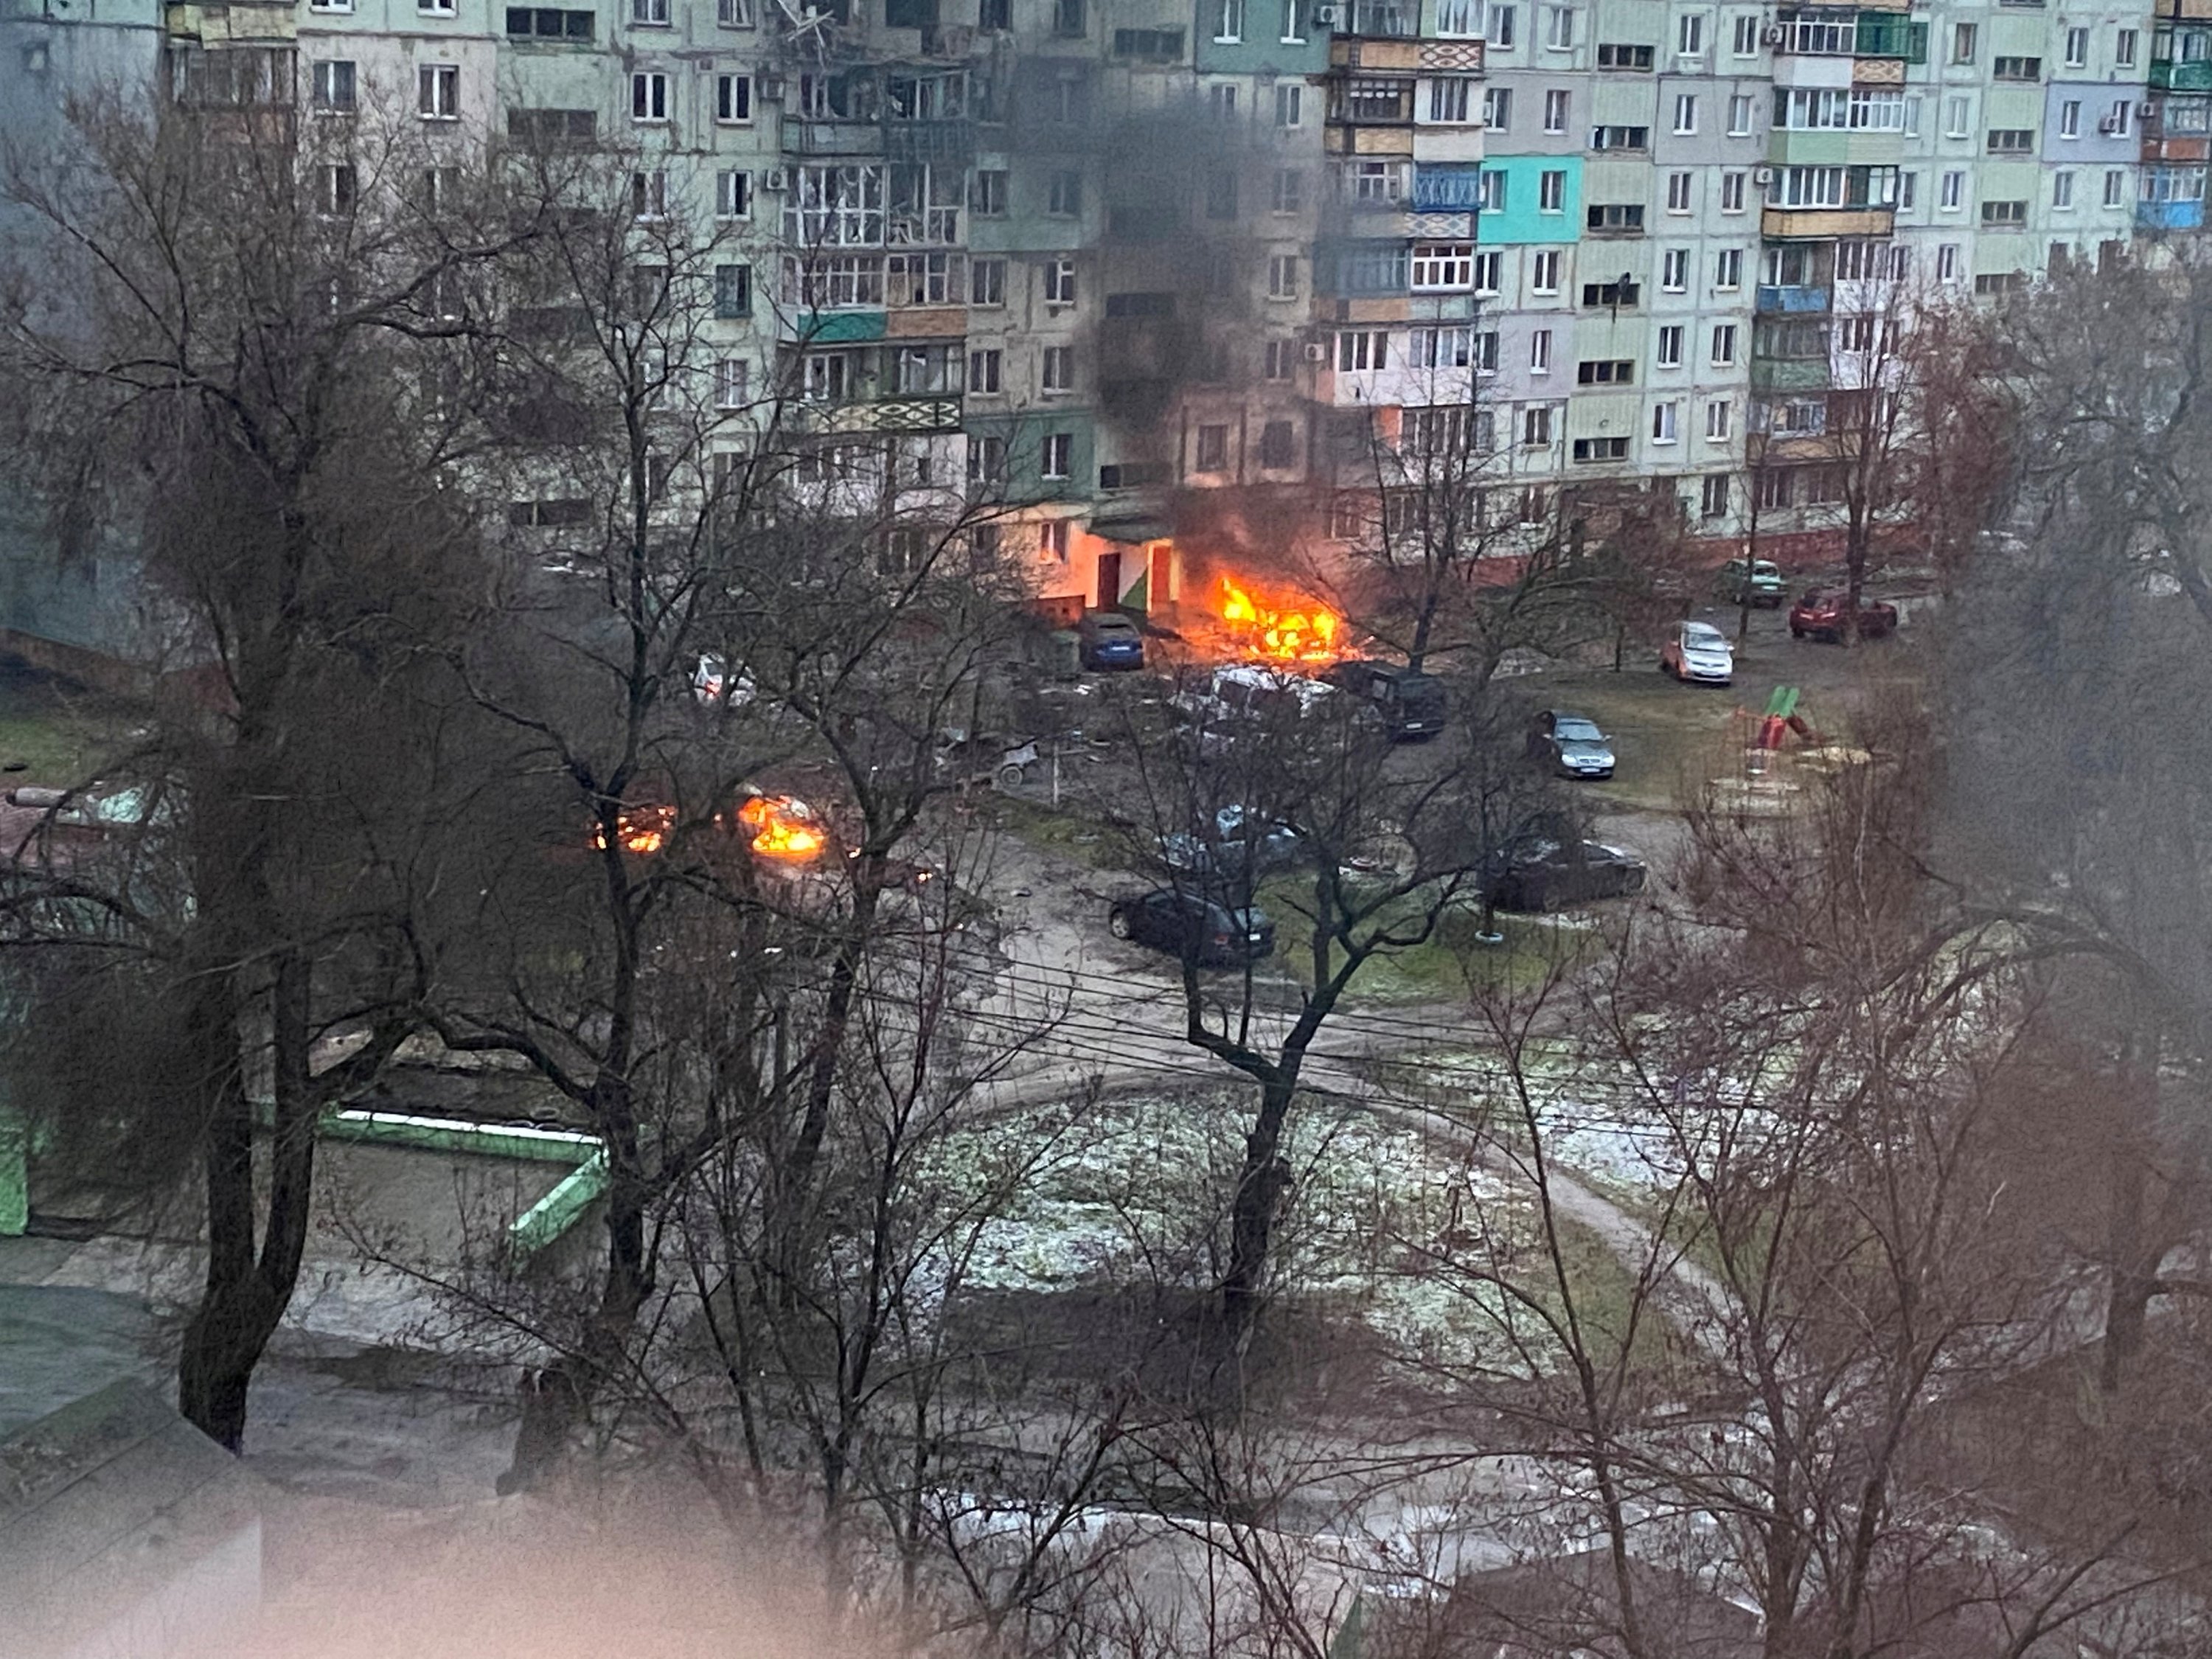 Kebakaran terlihat di Mariupol di area perumahan setelah penembakan di tengah invasi Rusia ke Ukraina, 3 Maret 2022, dalam gambar ini diperoleh dari media sosial.  (Twitter @AyBurlachenko melalui Reuters)